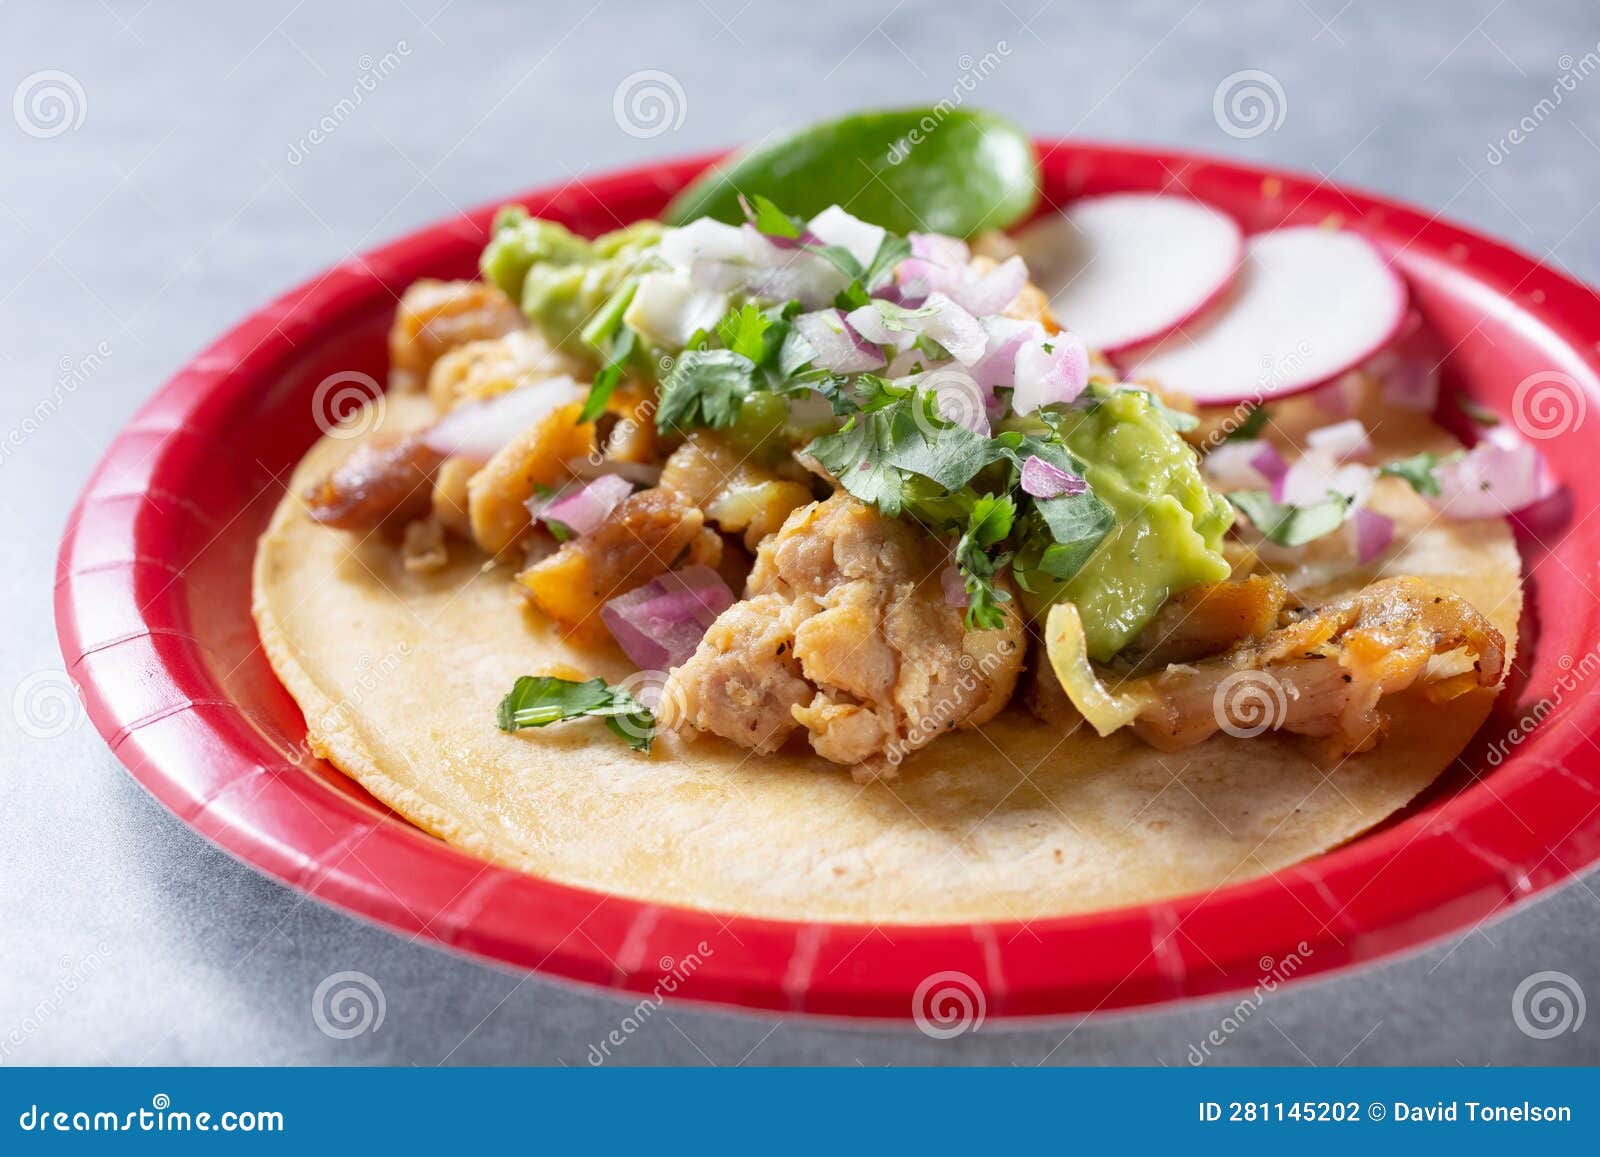 pollo asado street taco